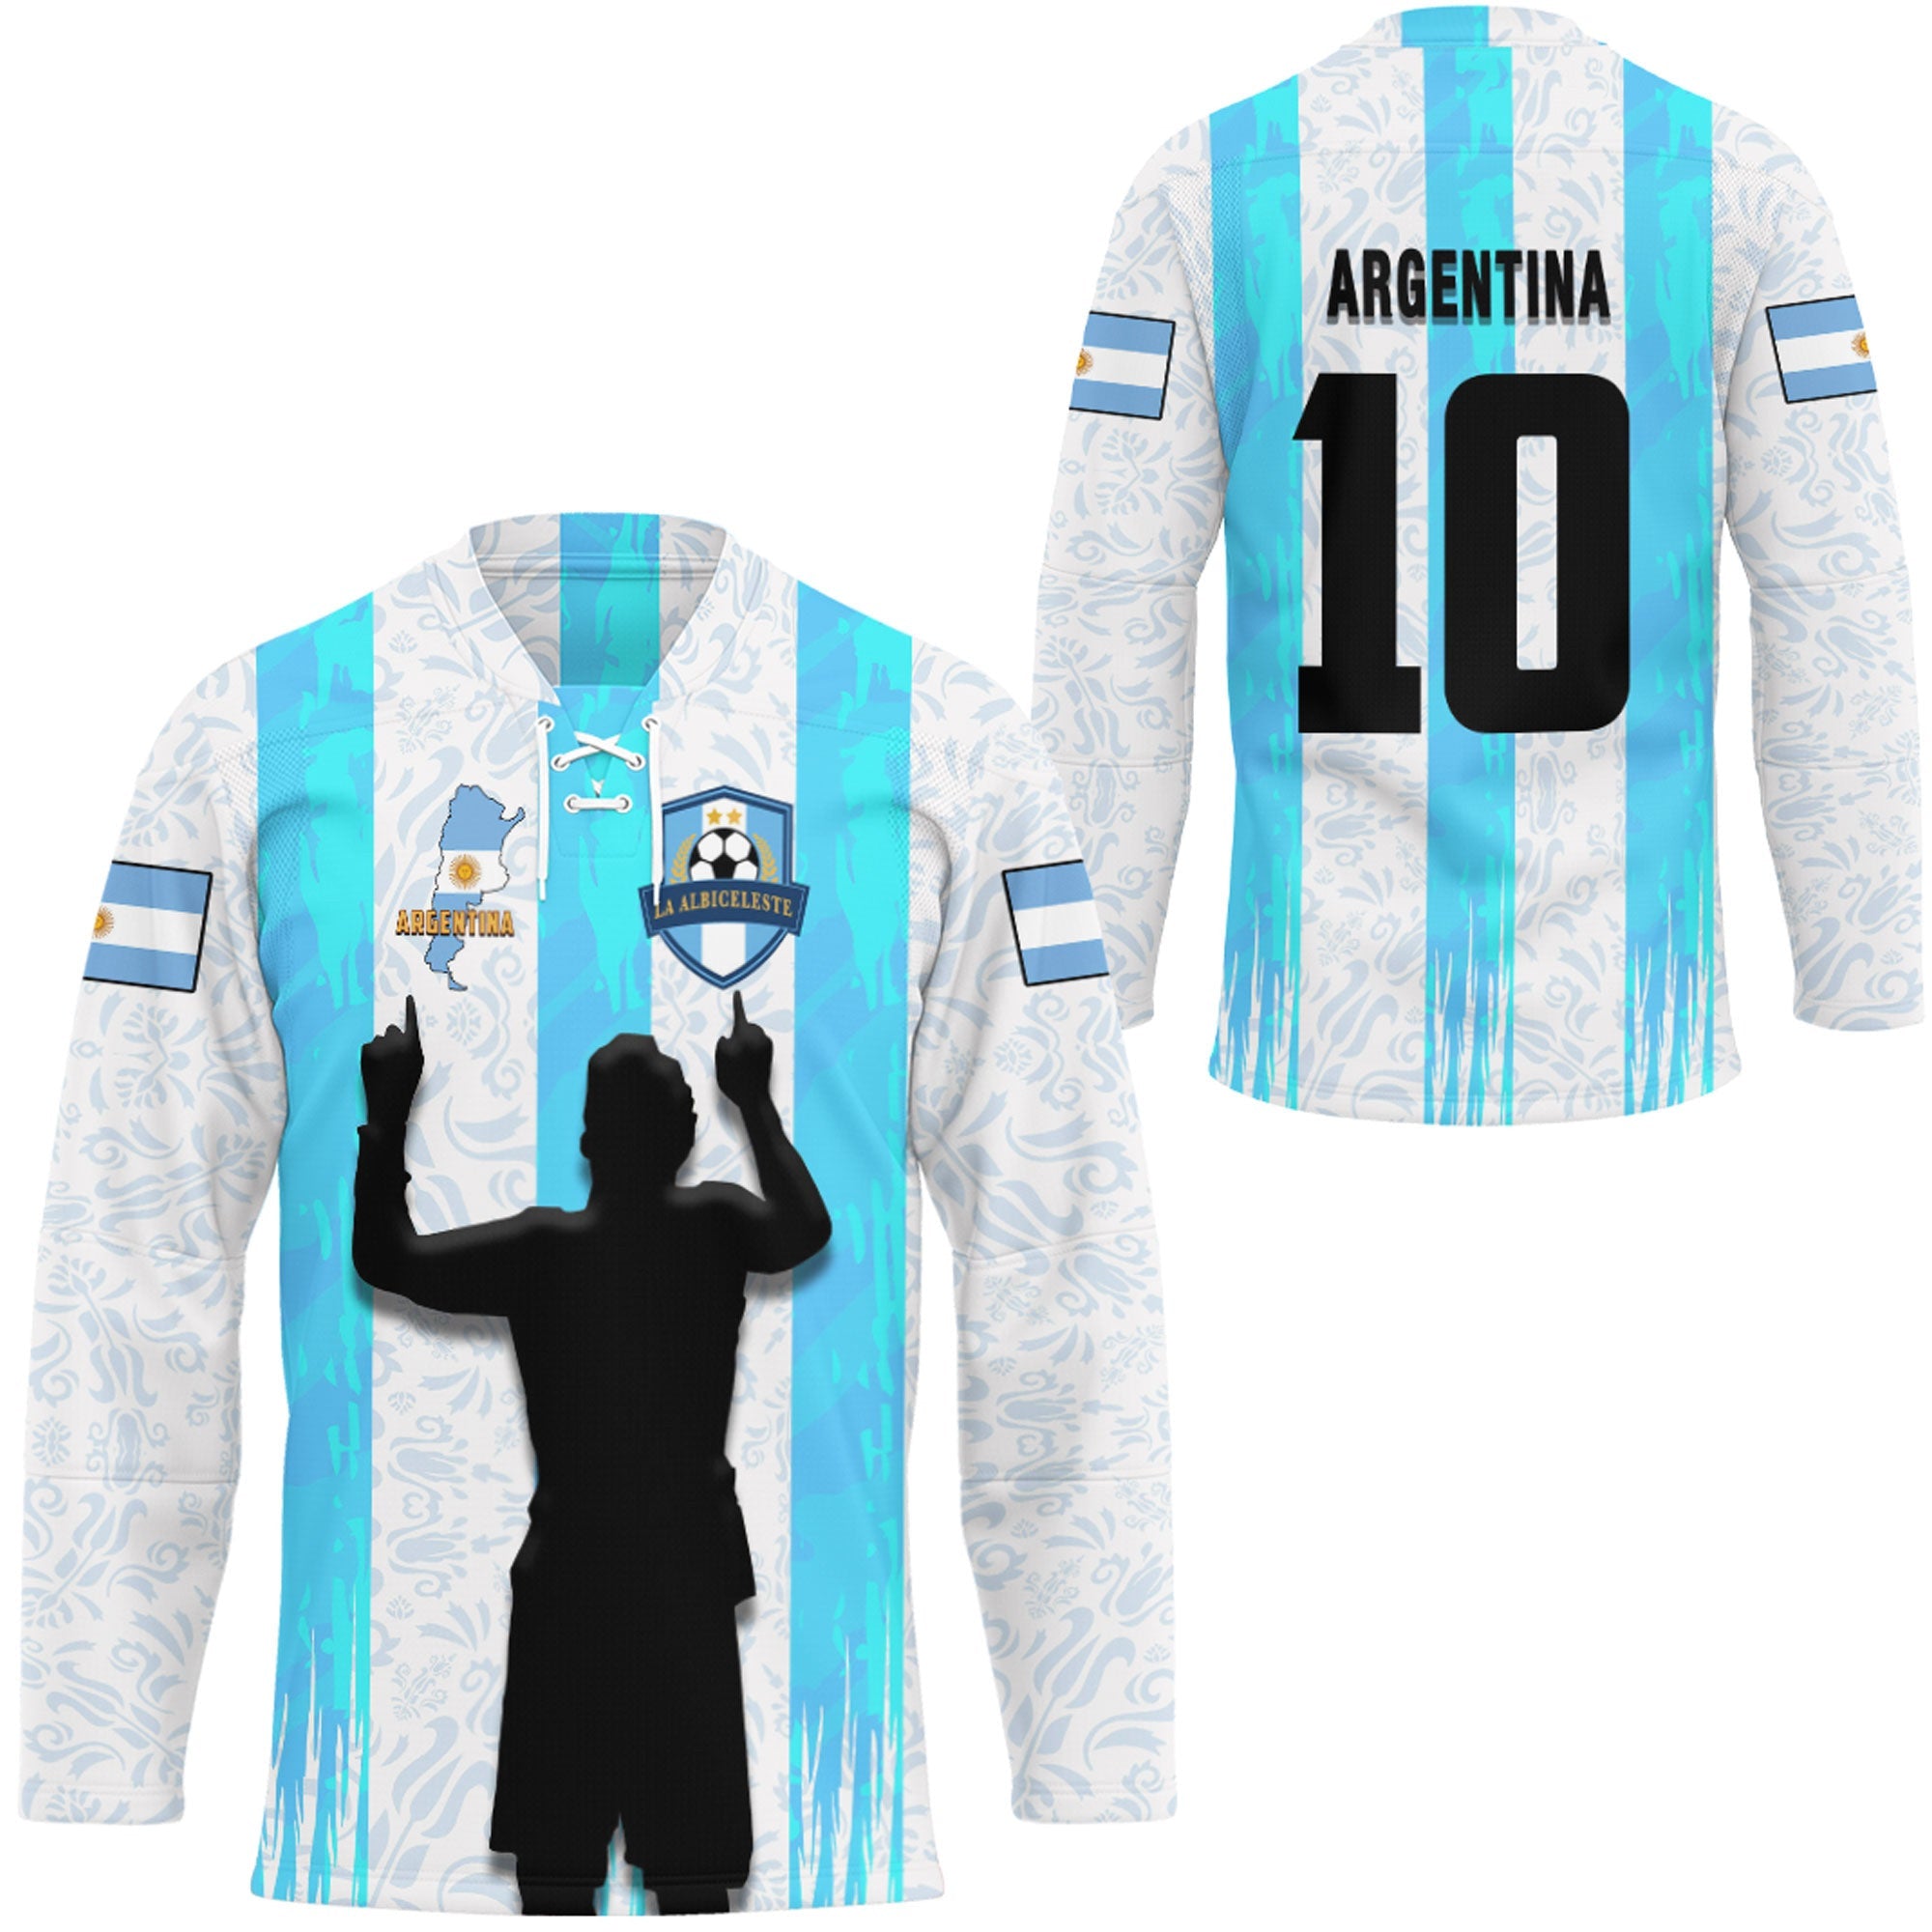 argentina-football-style-hockey-jersey